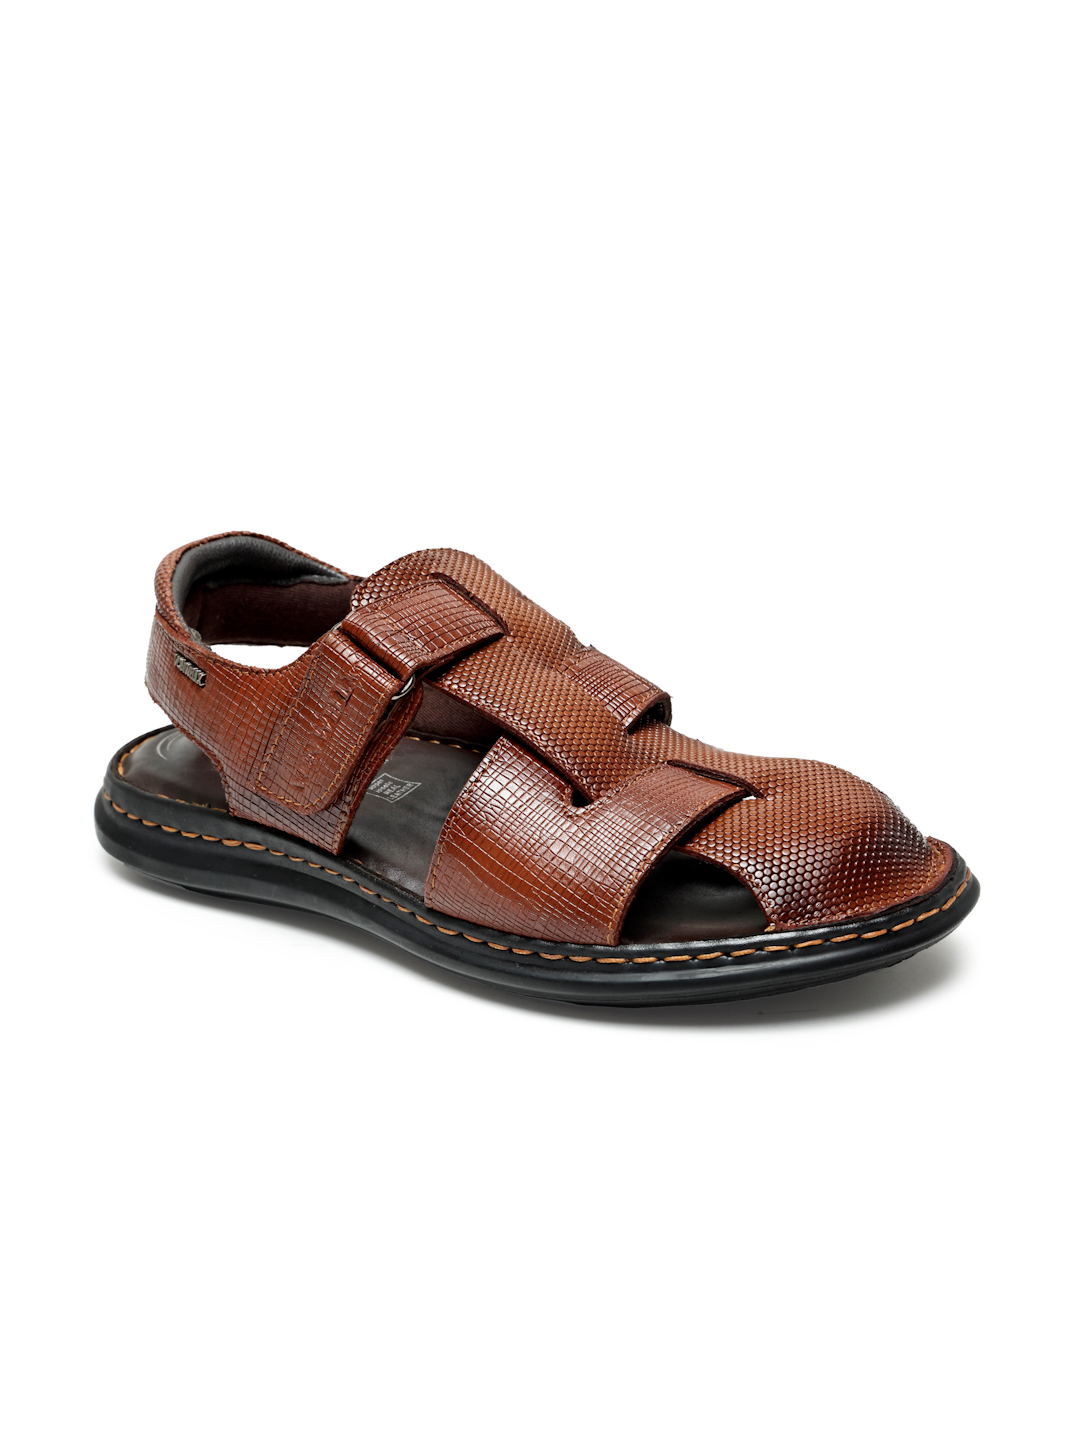 Buy Von Wellx Germany Comfort Men's Tan Sandals Morgen Online in Thane